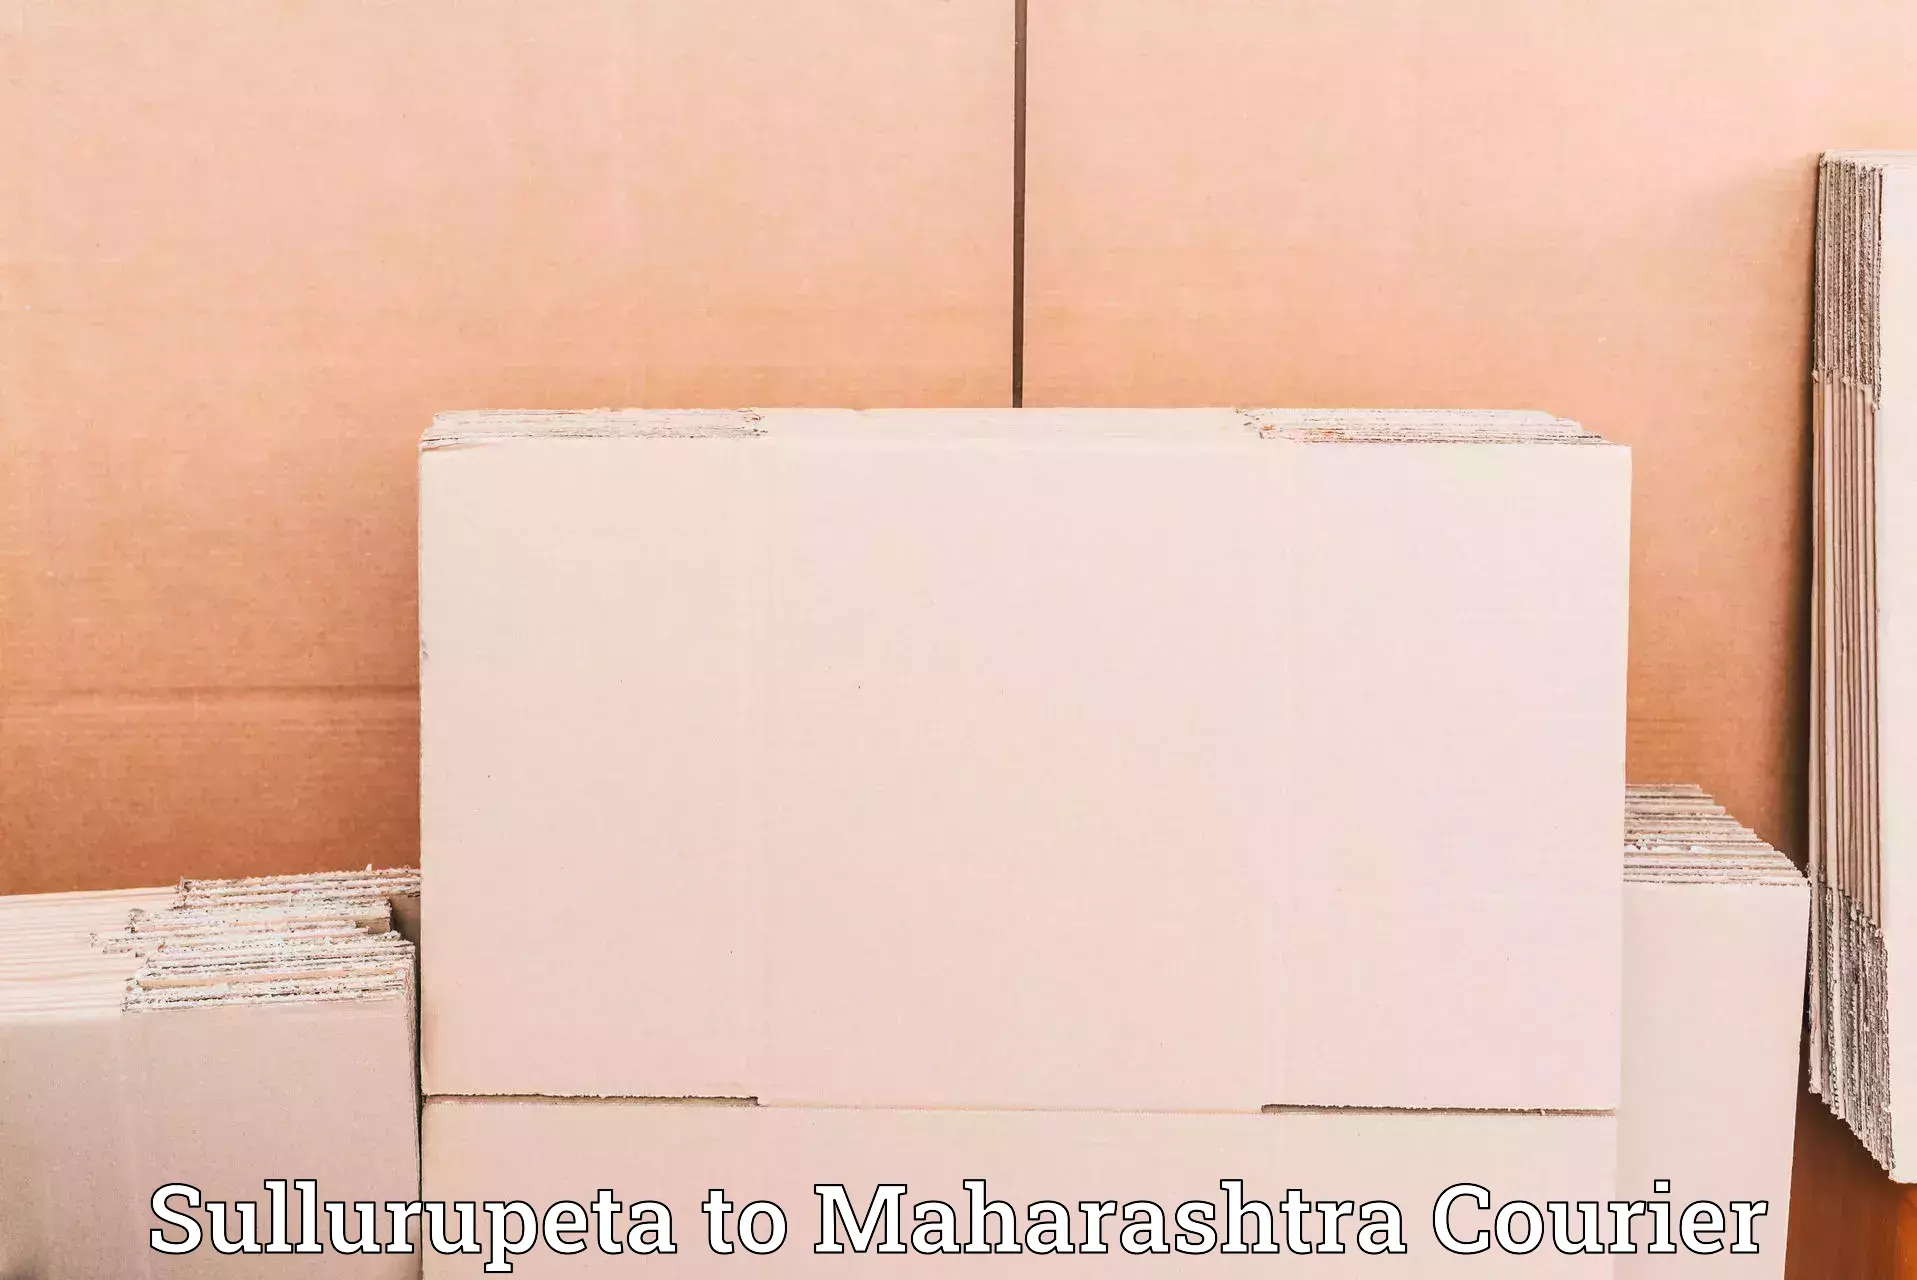 Premium courier services Sullurupeta to Maharashtra